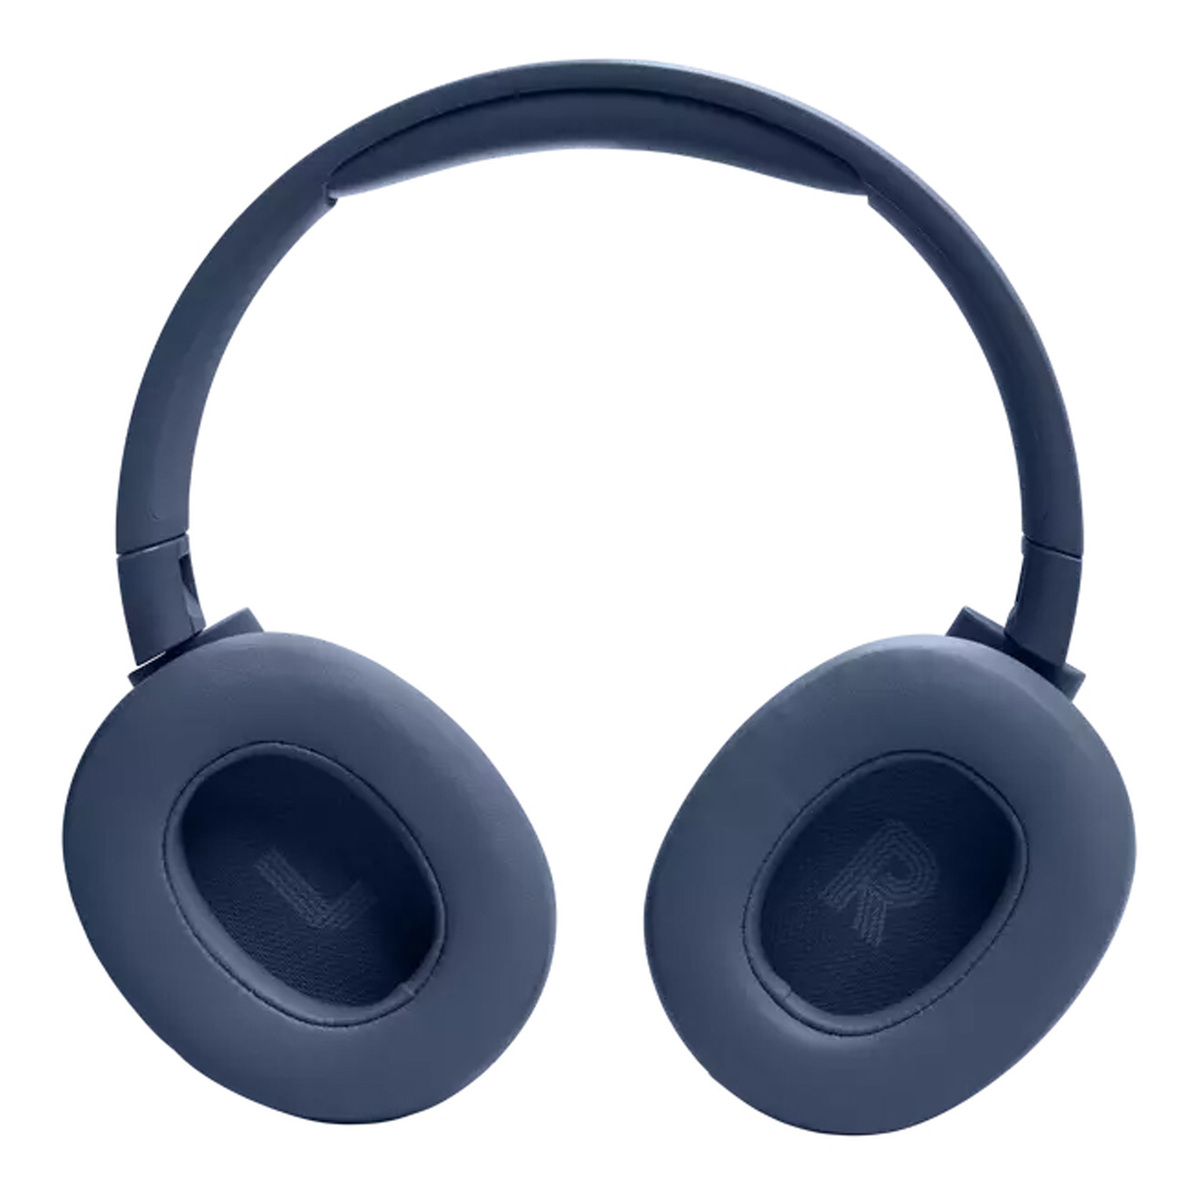 جي بي إل سماعة تون 720بلوتوث اللاسلكية فوق الاذن باللون الأزرق